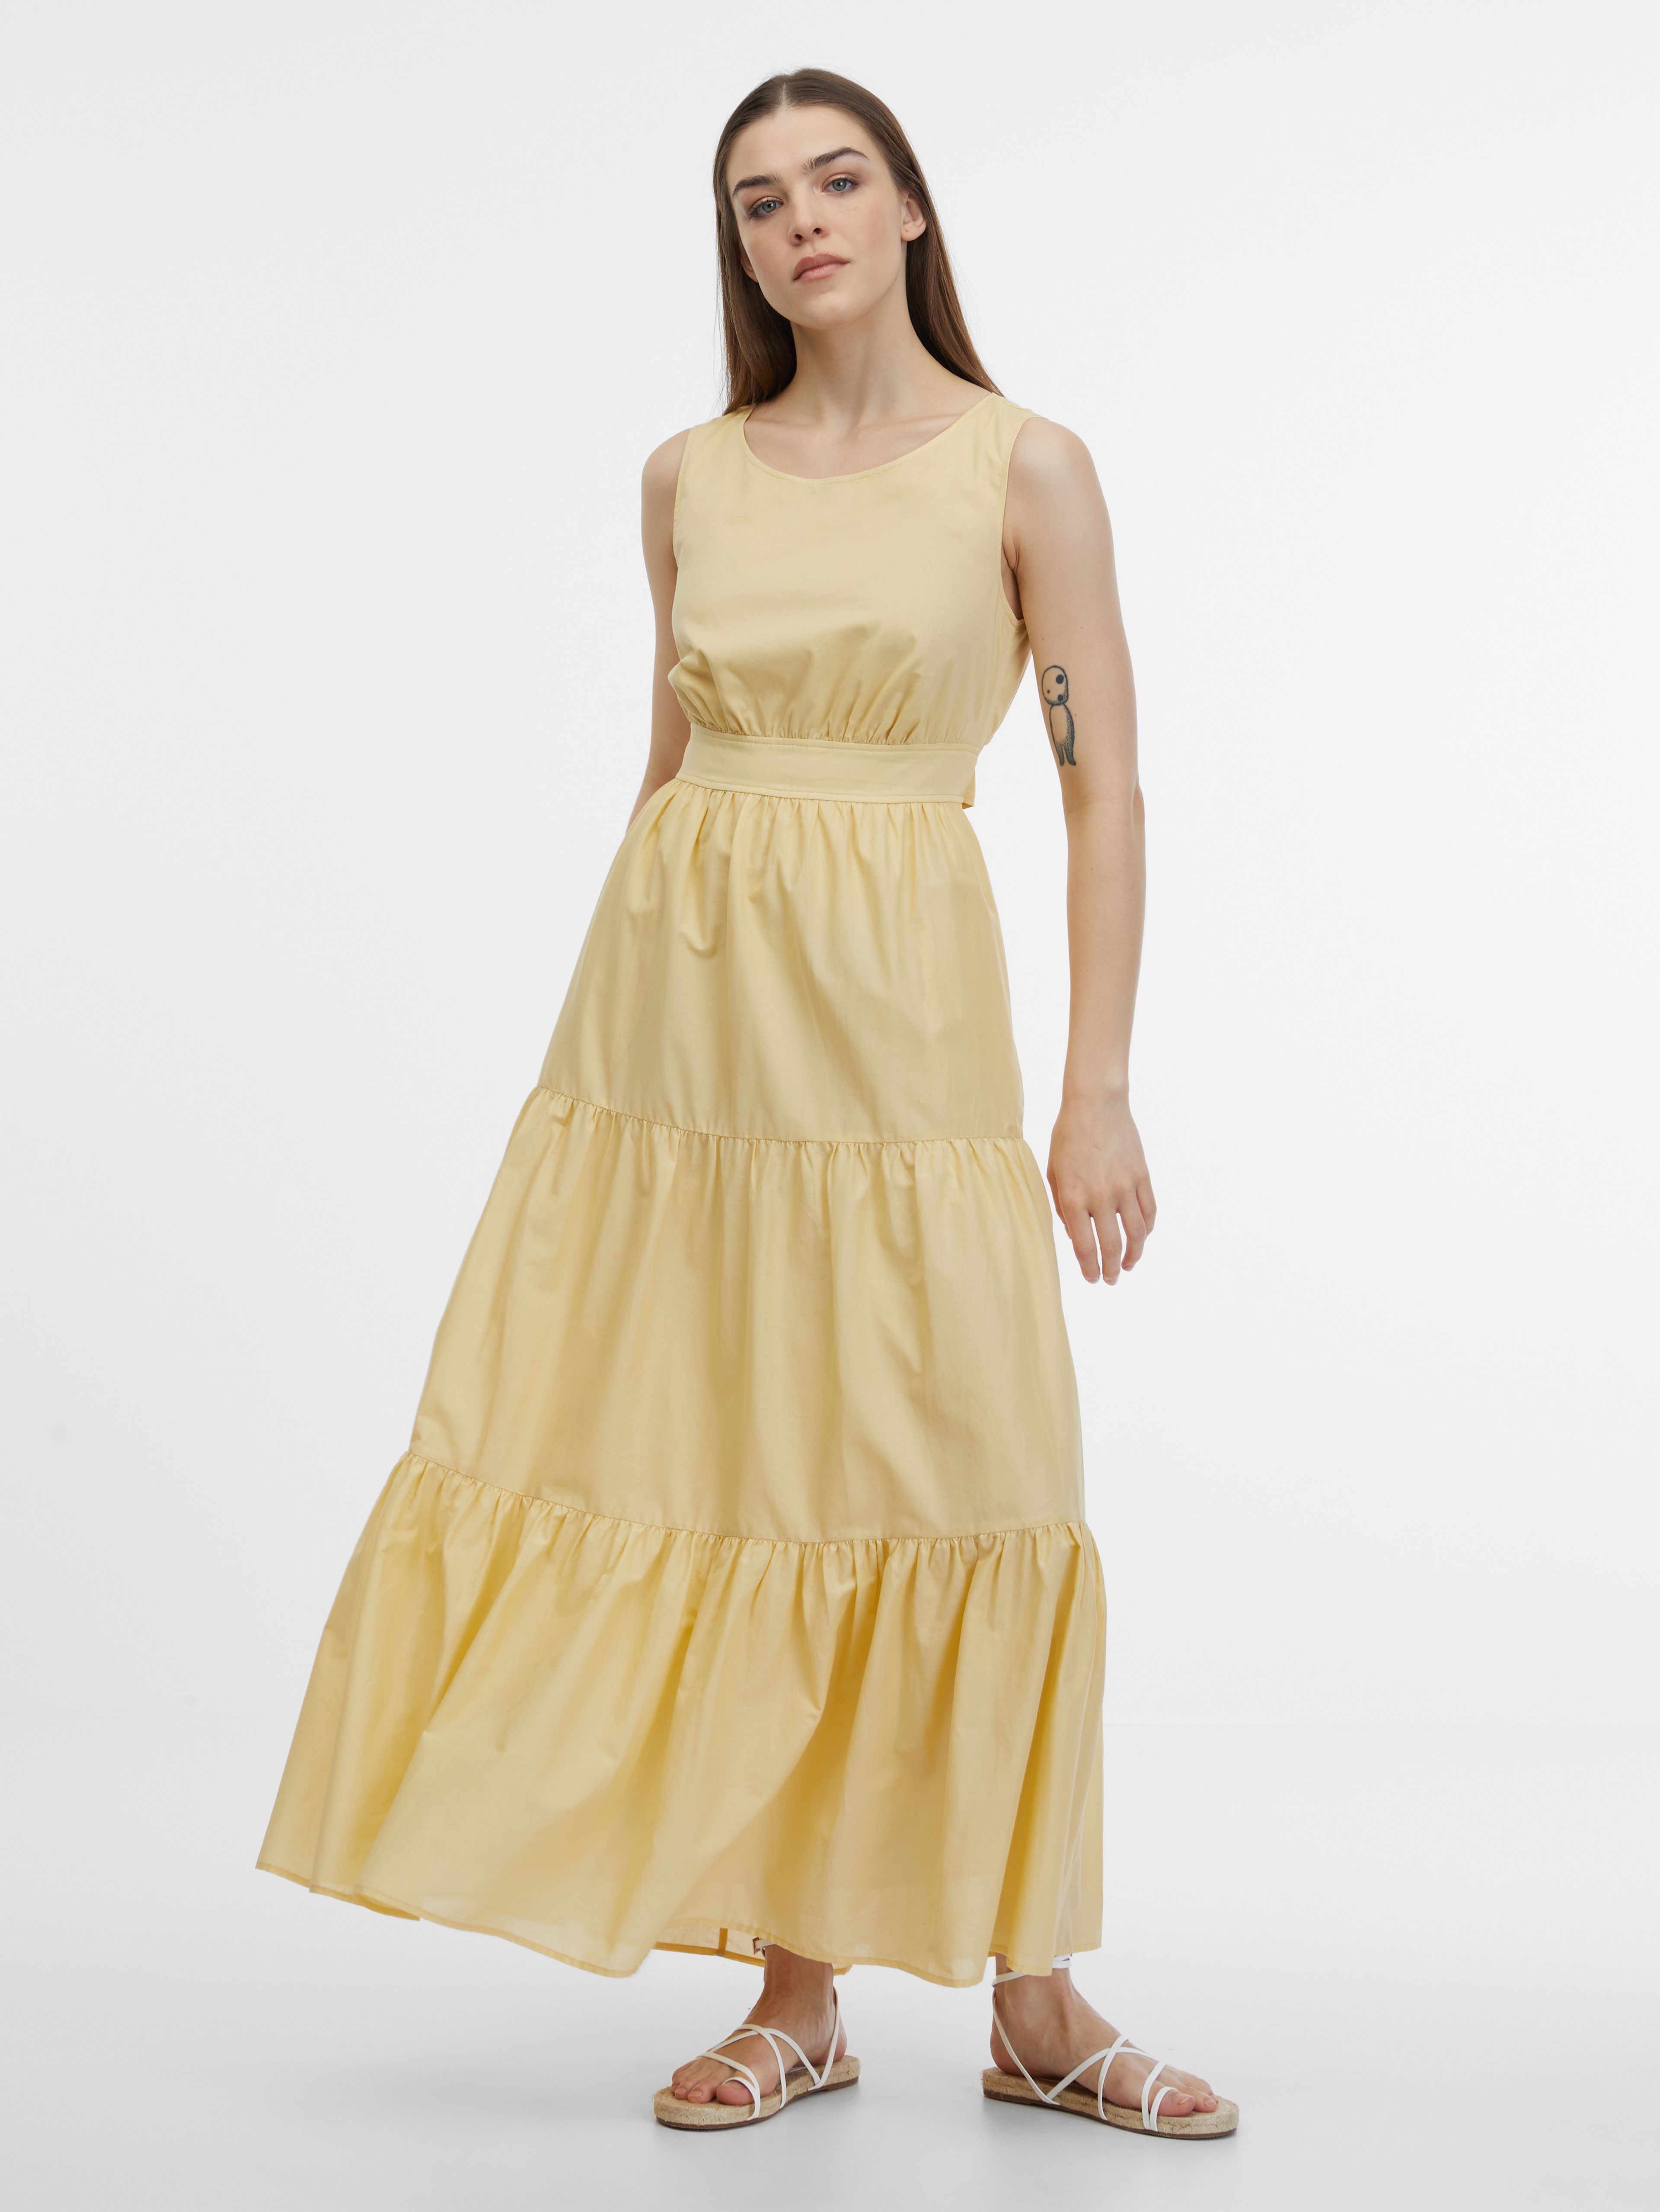 Rumena ženska obleka ORSAY